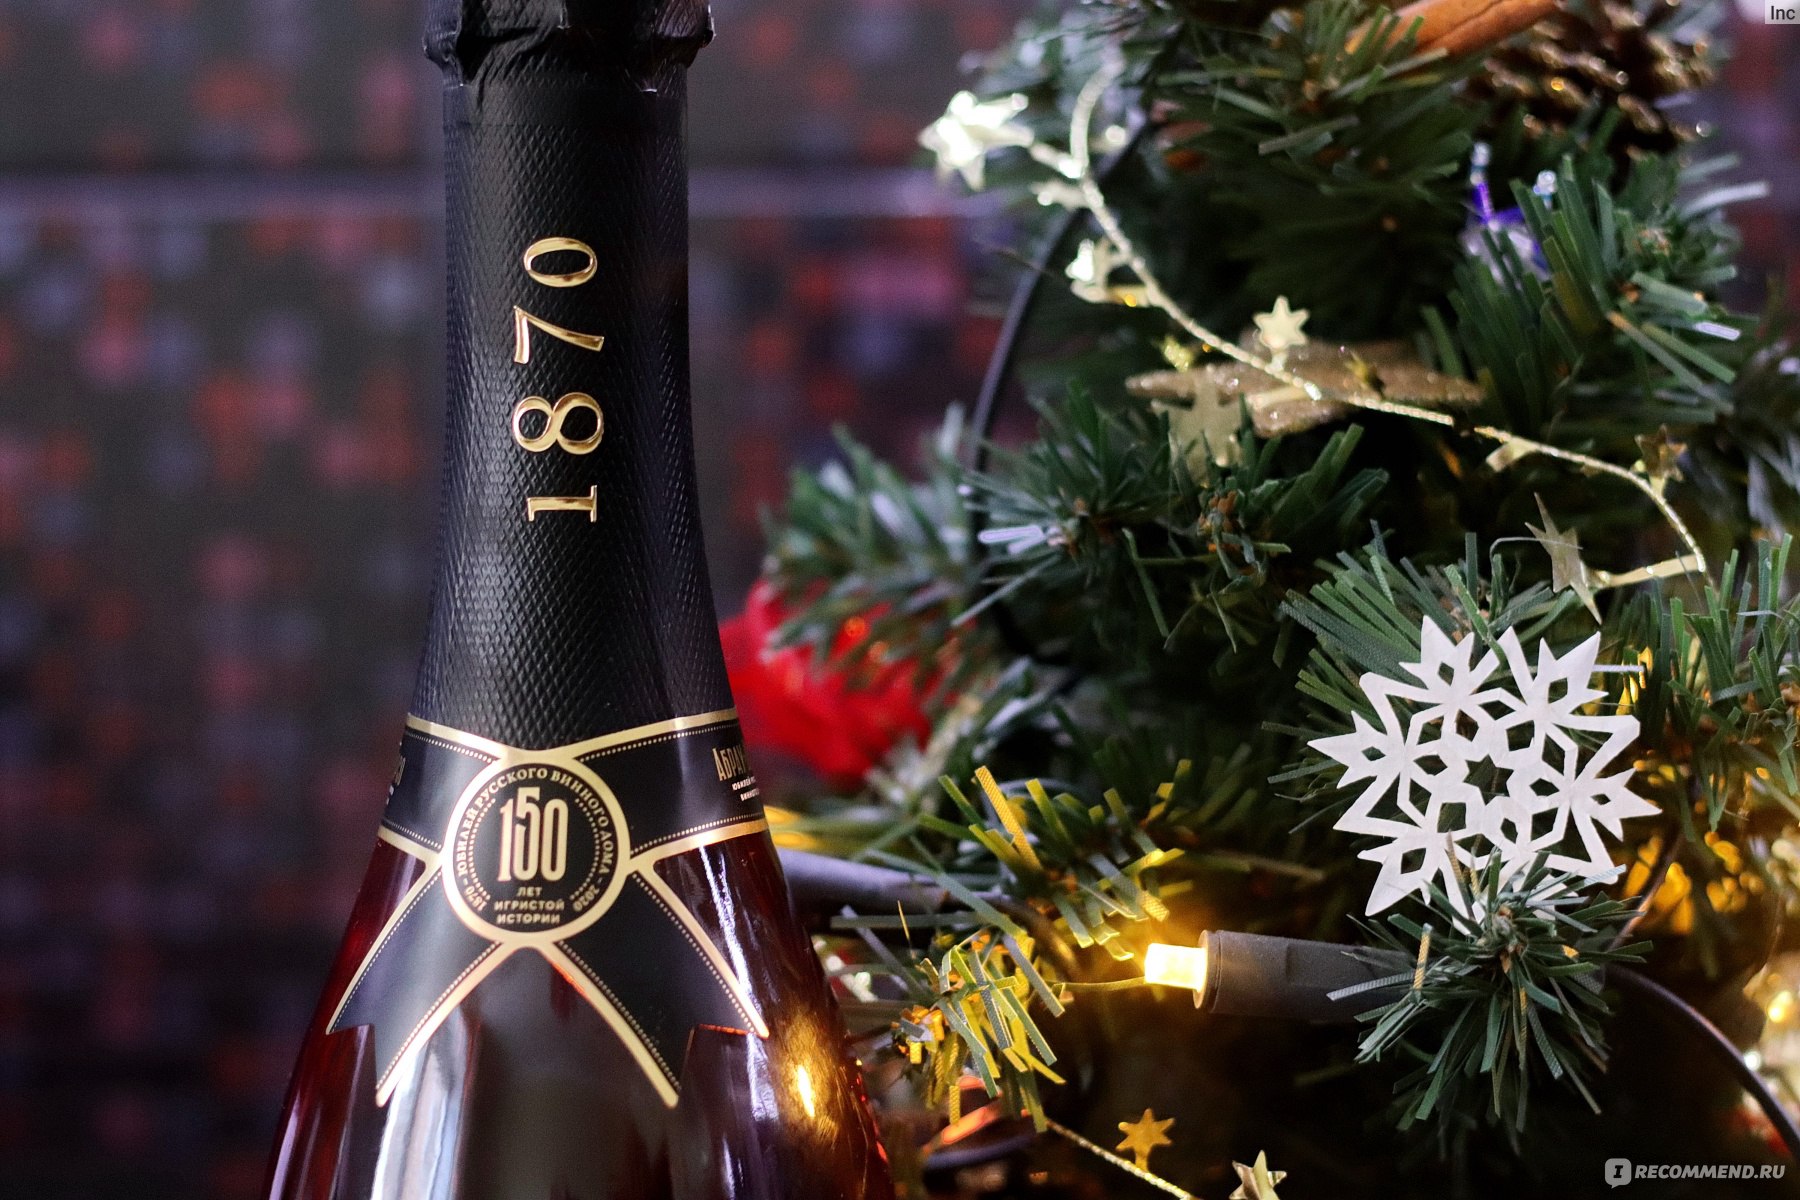 Шампанского 2022. Абрау-Дюрсо Империал шампанское. Новый год шампанское елка. Новый год 2022 шампанское. Шампанское Абрау Дюрсо новогодний стол.